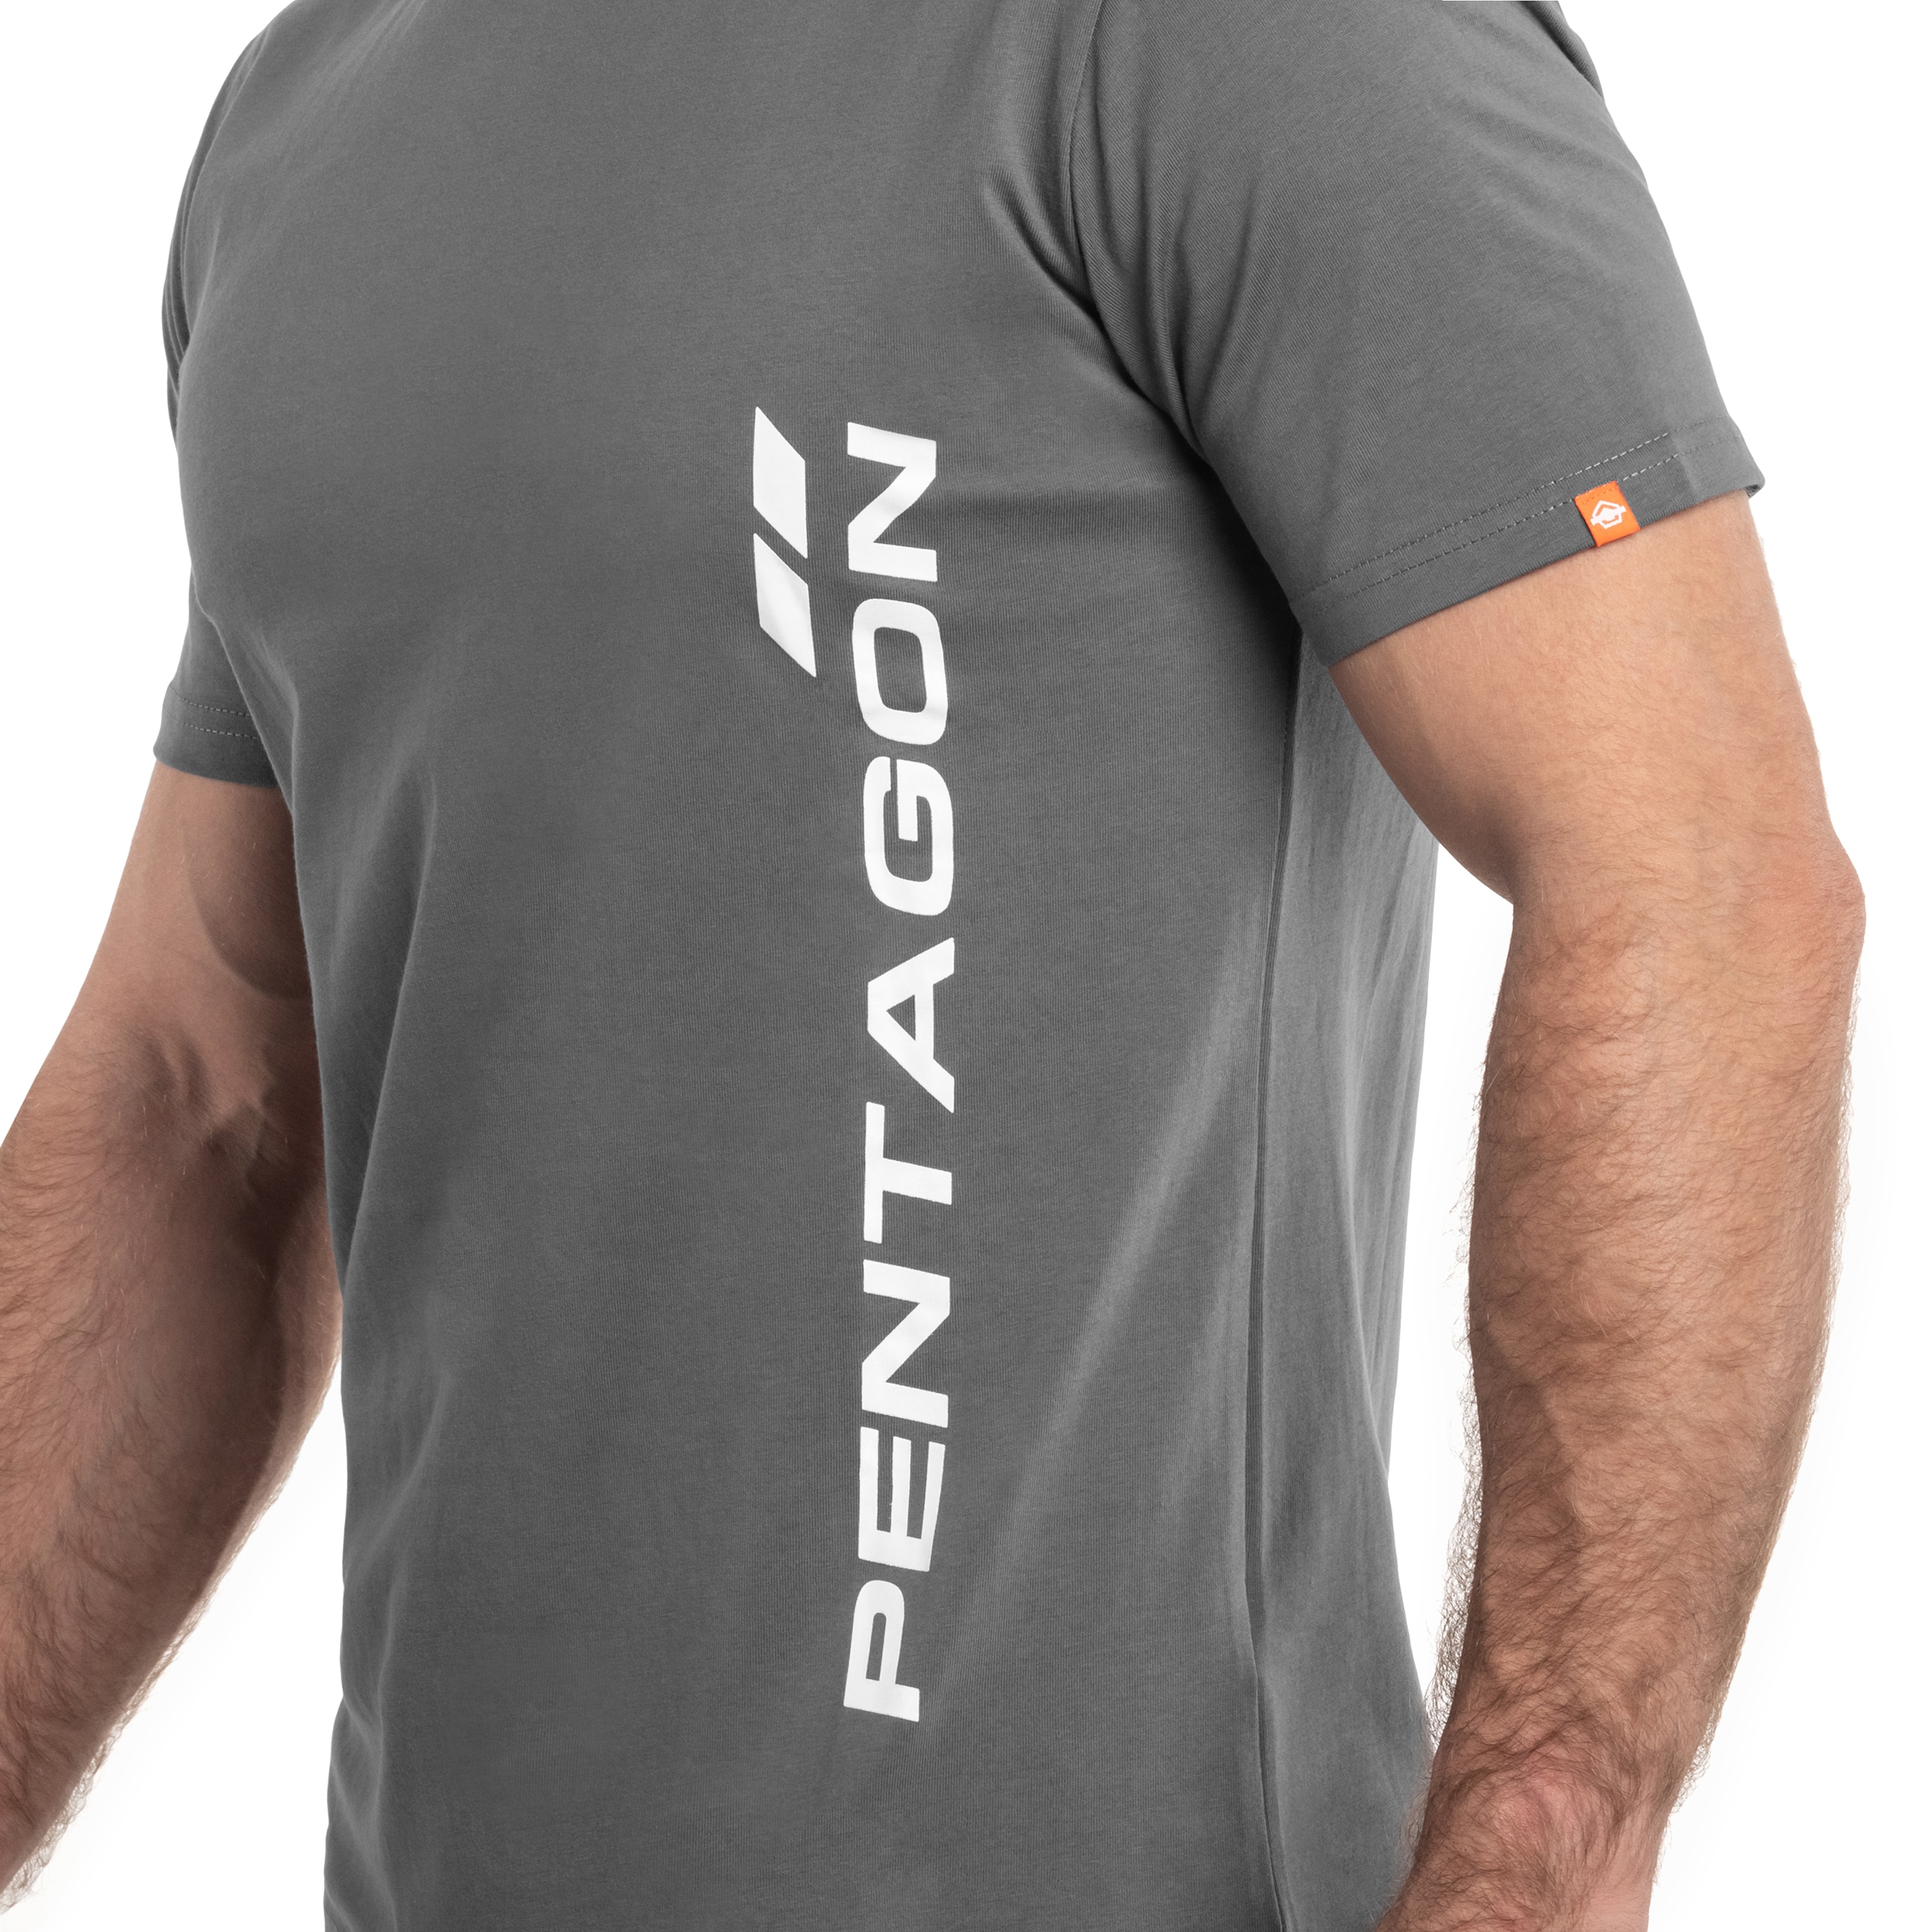 Koszulka T-shirt Pentagon Vertical - Wolf Grey